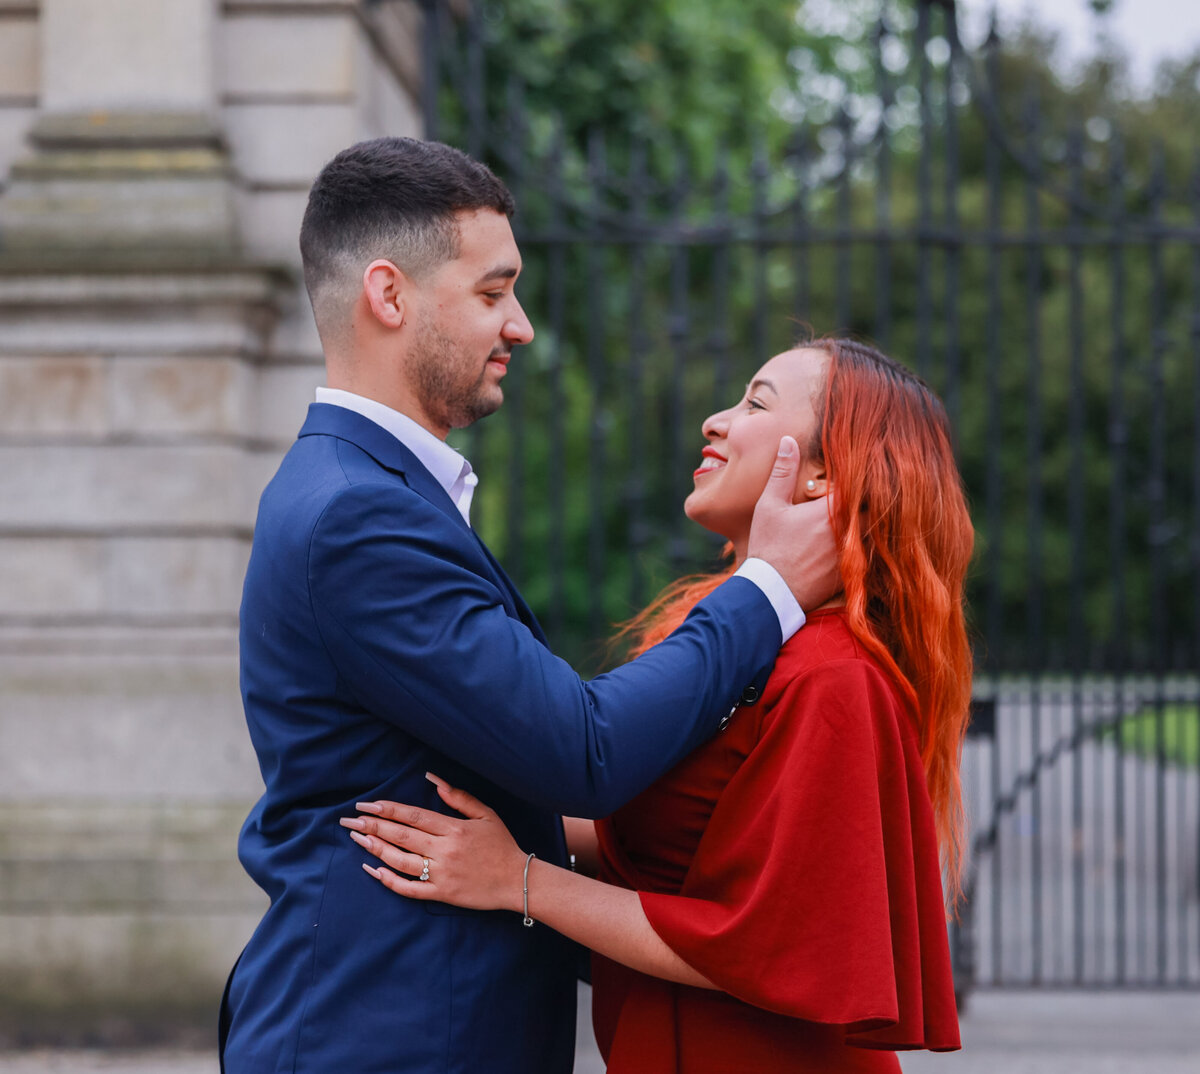 engaged couple in city center Dublin Ireland by Ireland wedding photographer Amanda Richardson Photography